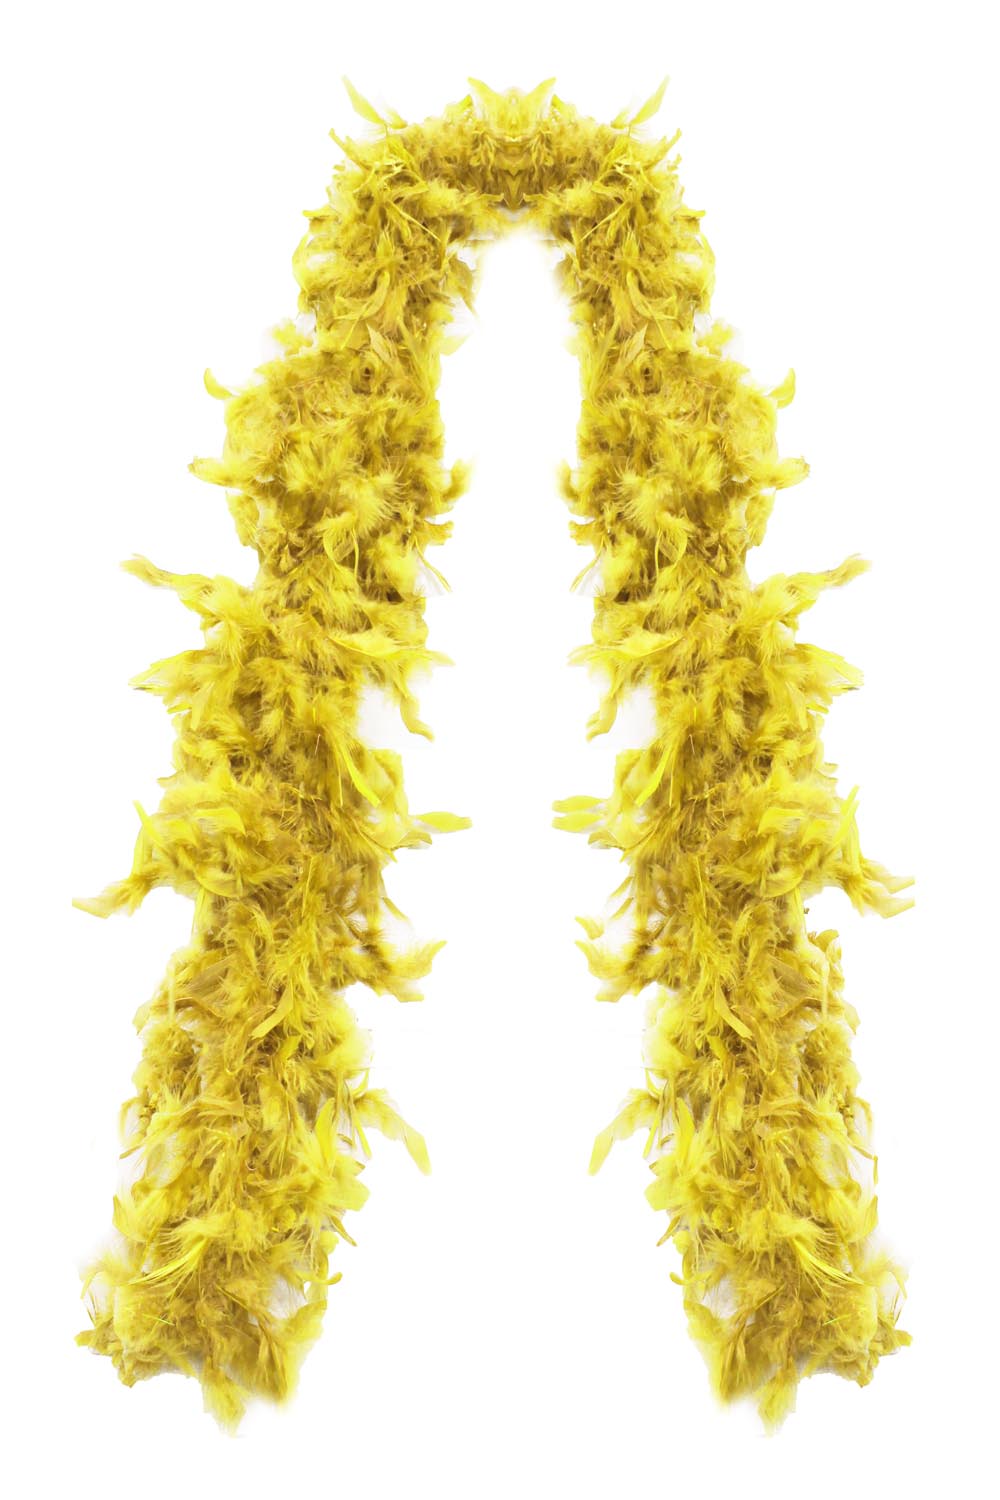 Boa piuma struzzo giallo